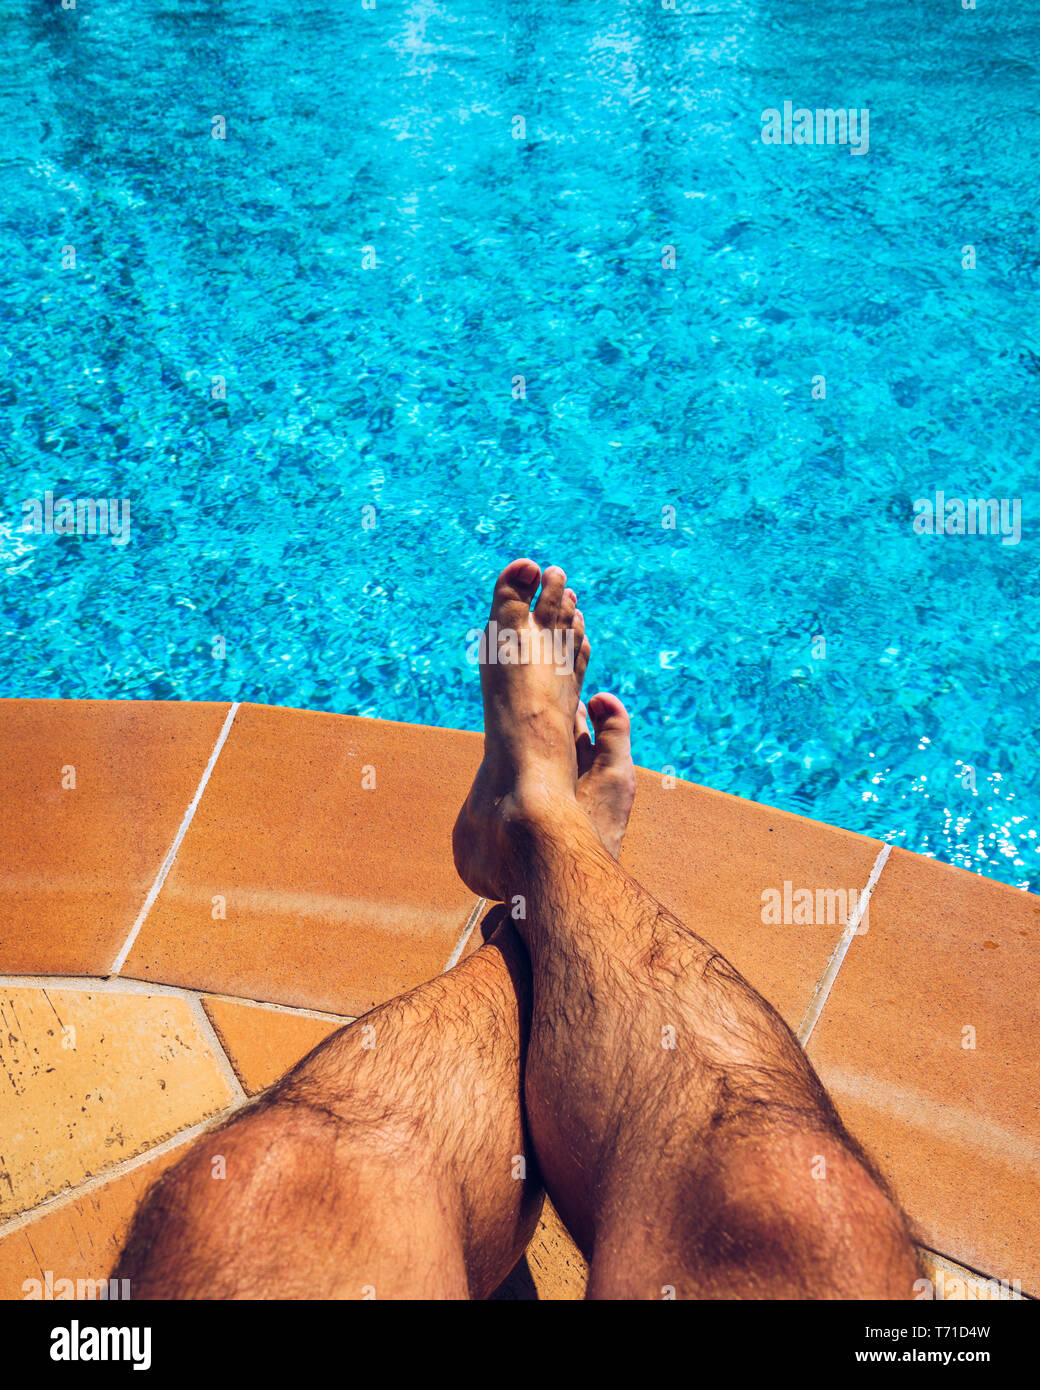 Relax presso la piscina. L'uomo rilassarsi vicino alla piscina. L'uomo godendo della calda estate in piscina. Prendere il sole in piscina, mans Foto Stock